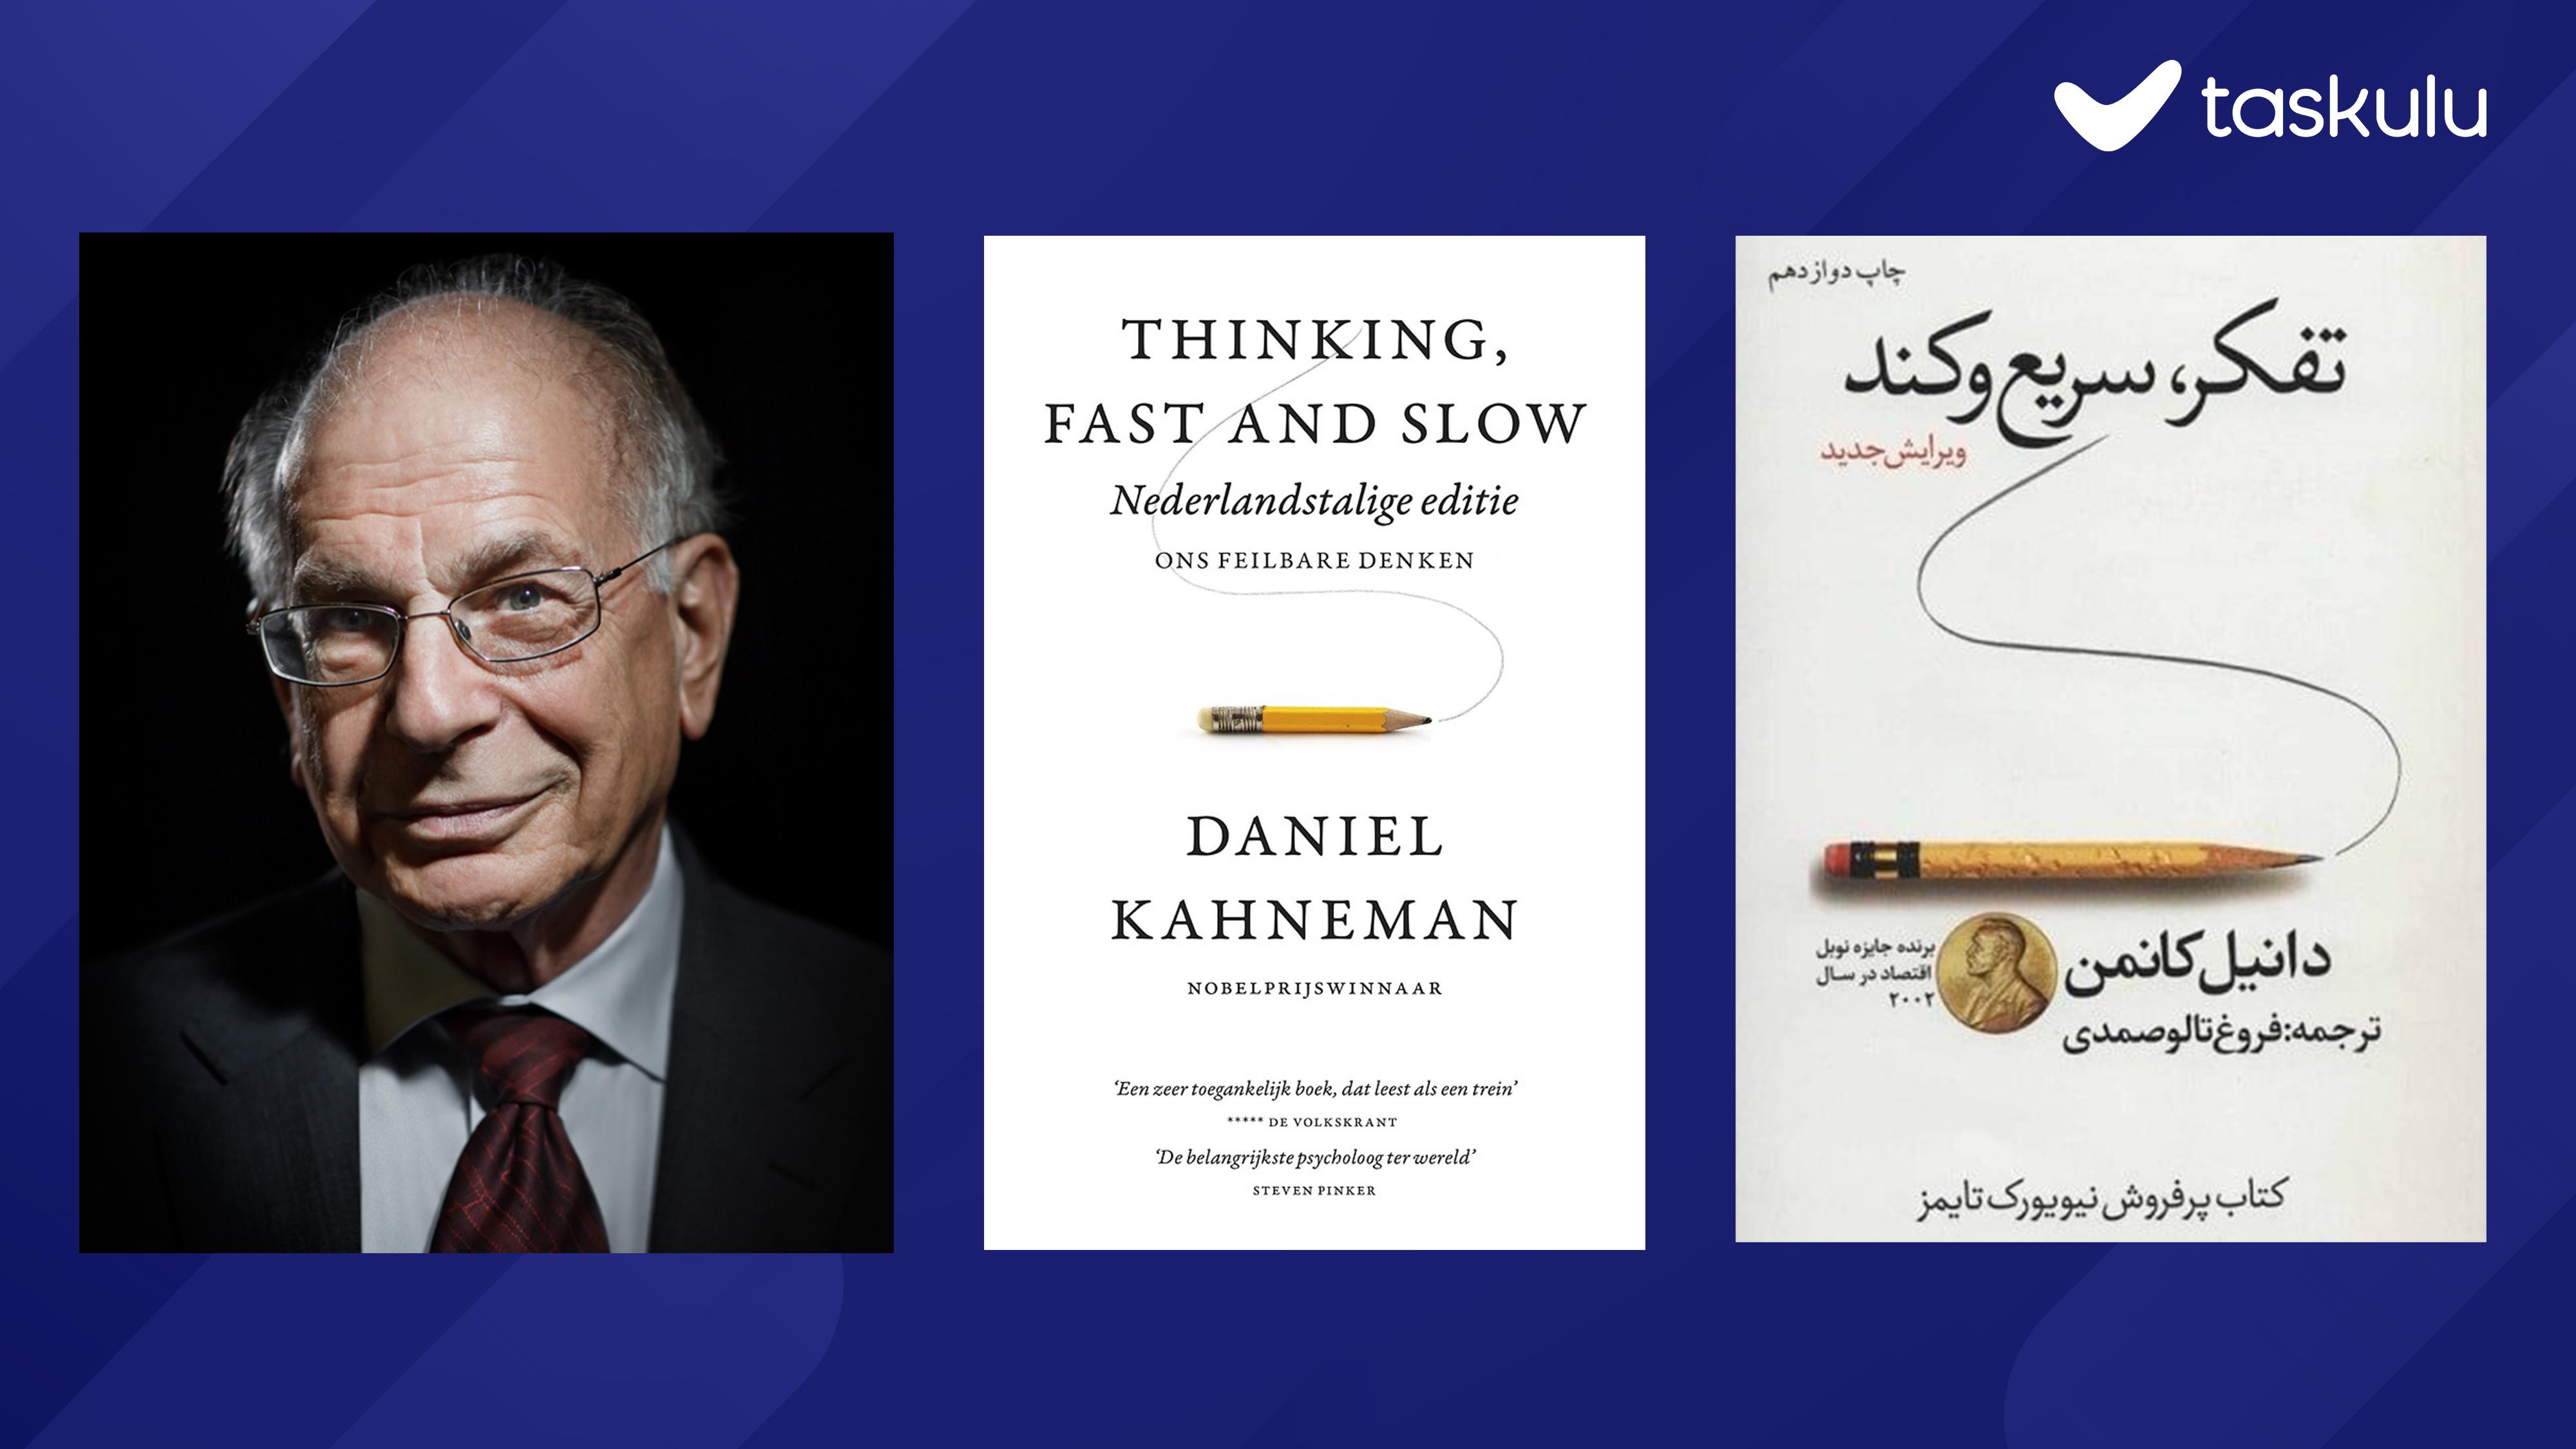 معرفی کتاب تفکر، کند و سریع | Thinking, Fast and Slow در تسکولو